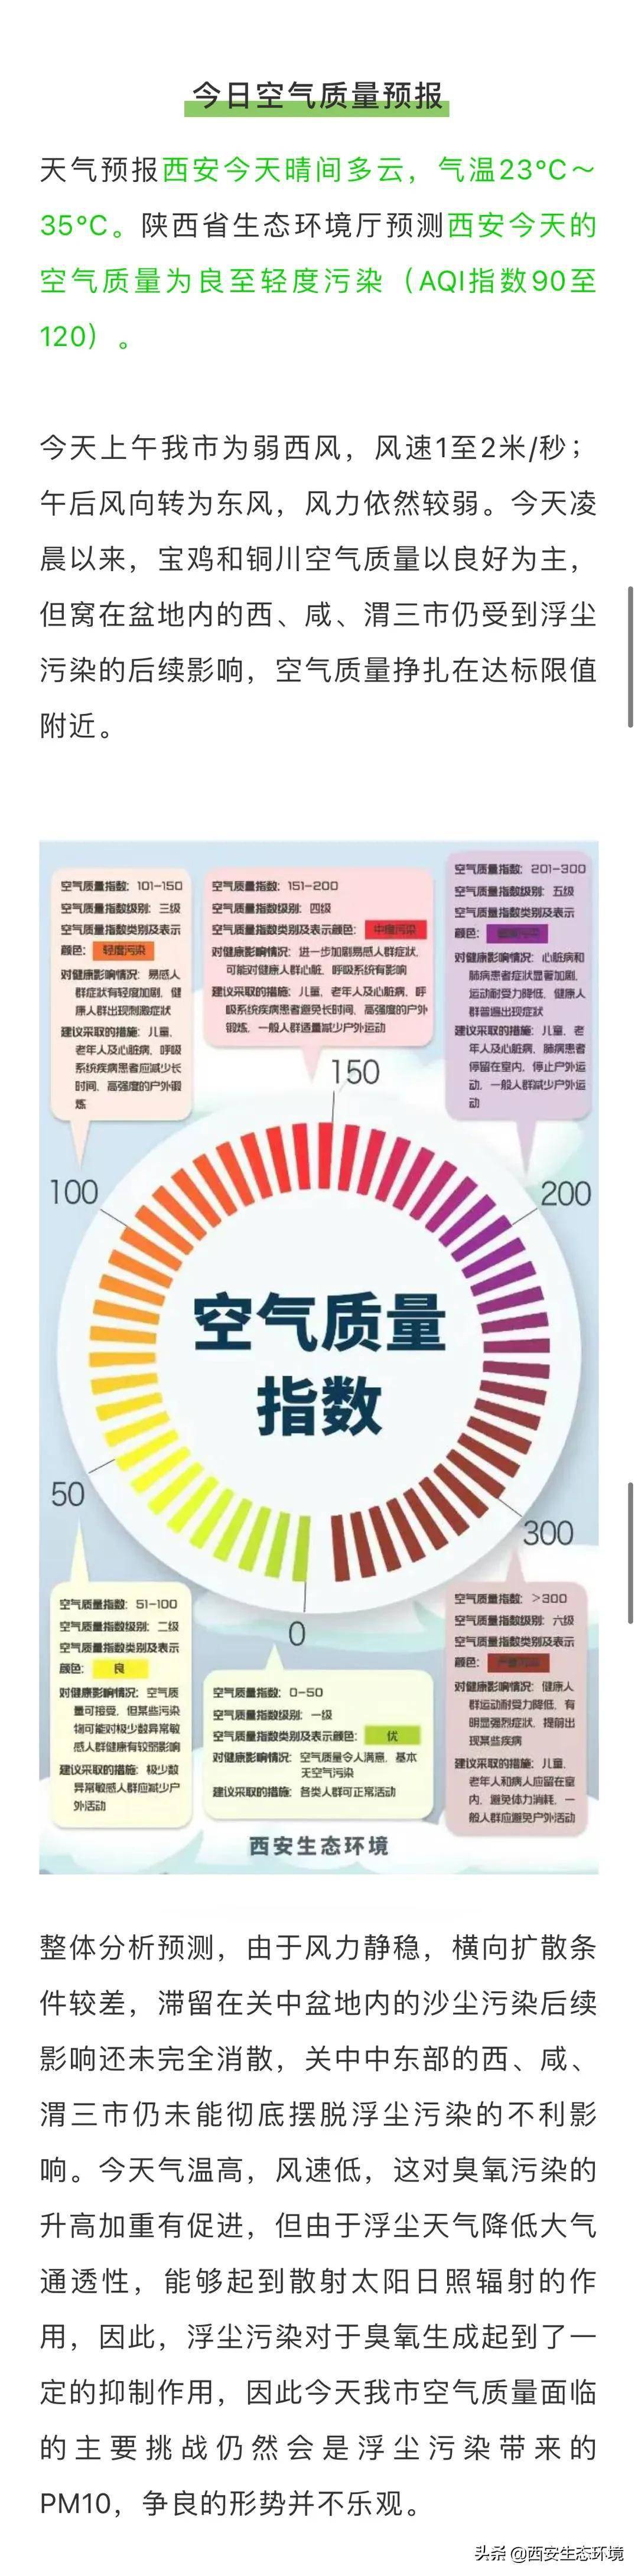 陕西省生态环境厅预测西安今天的空气质量为良至轻度污染(aqi指数90